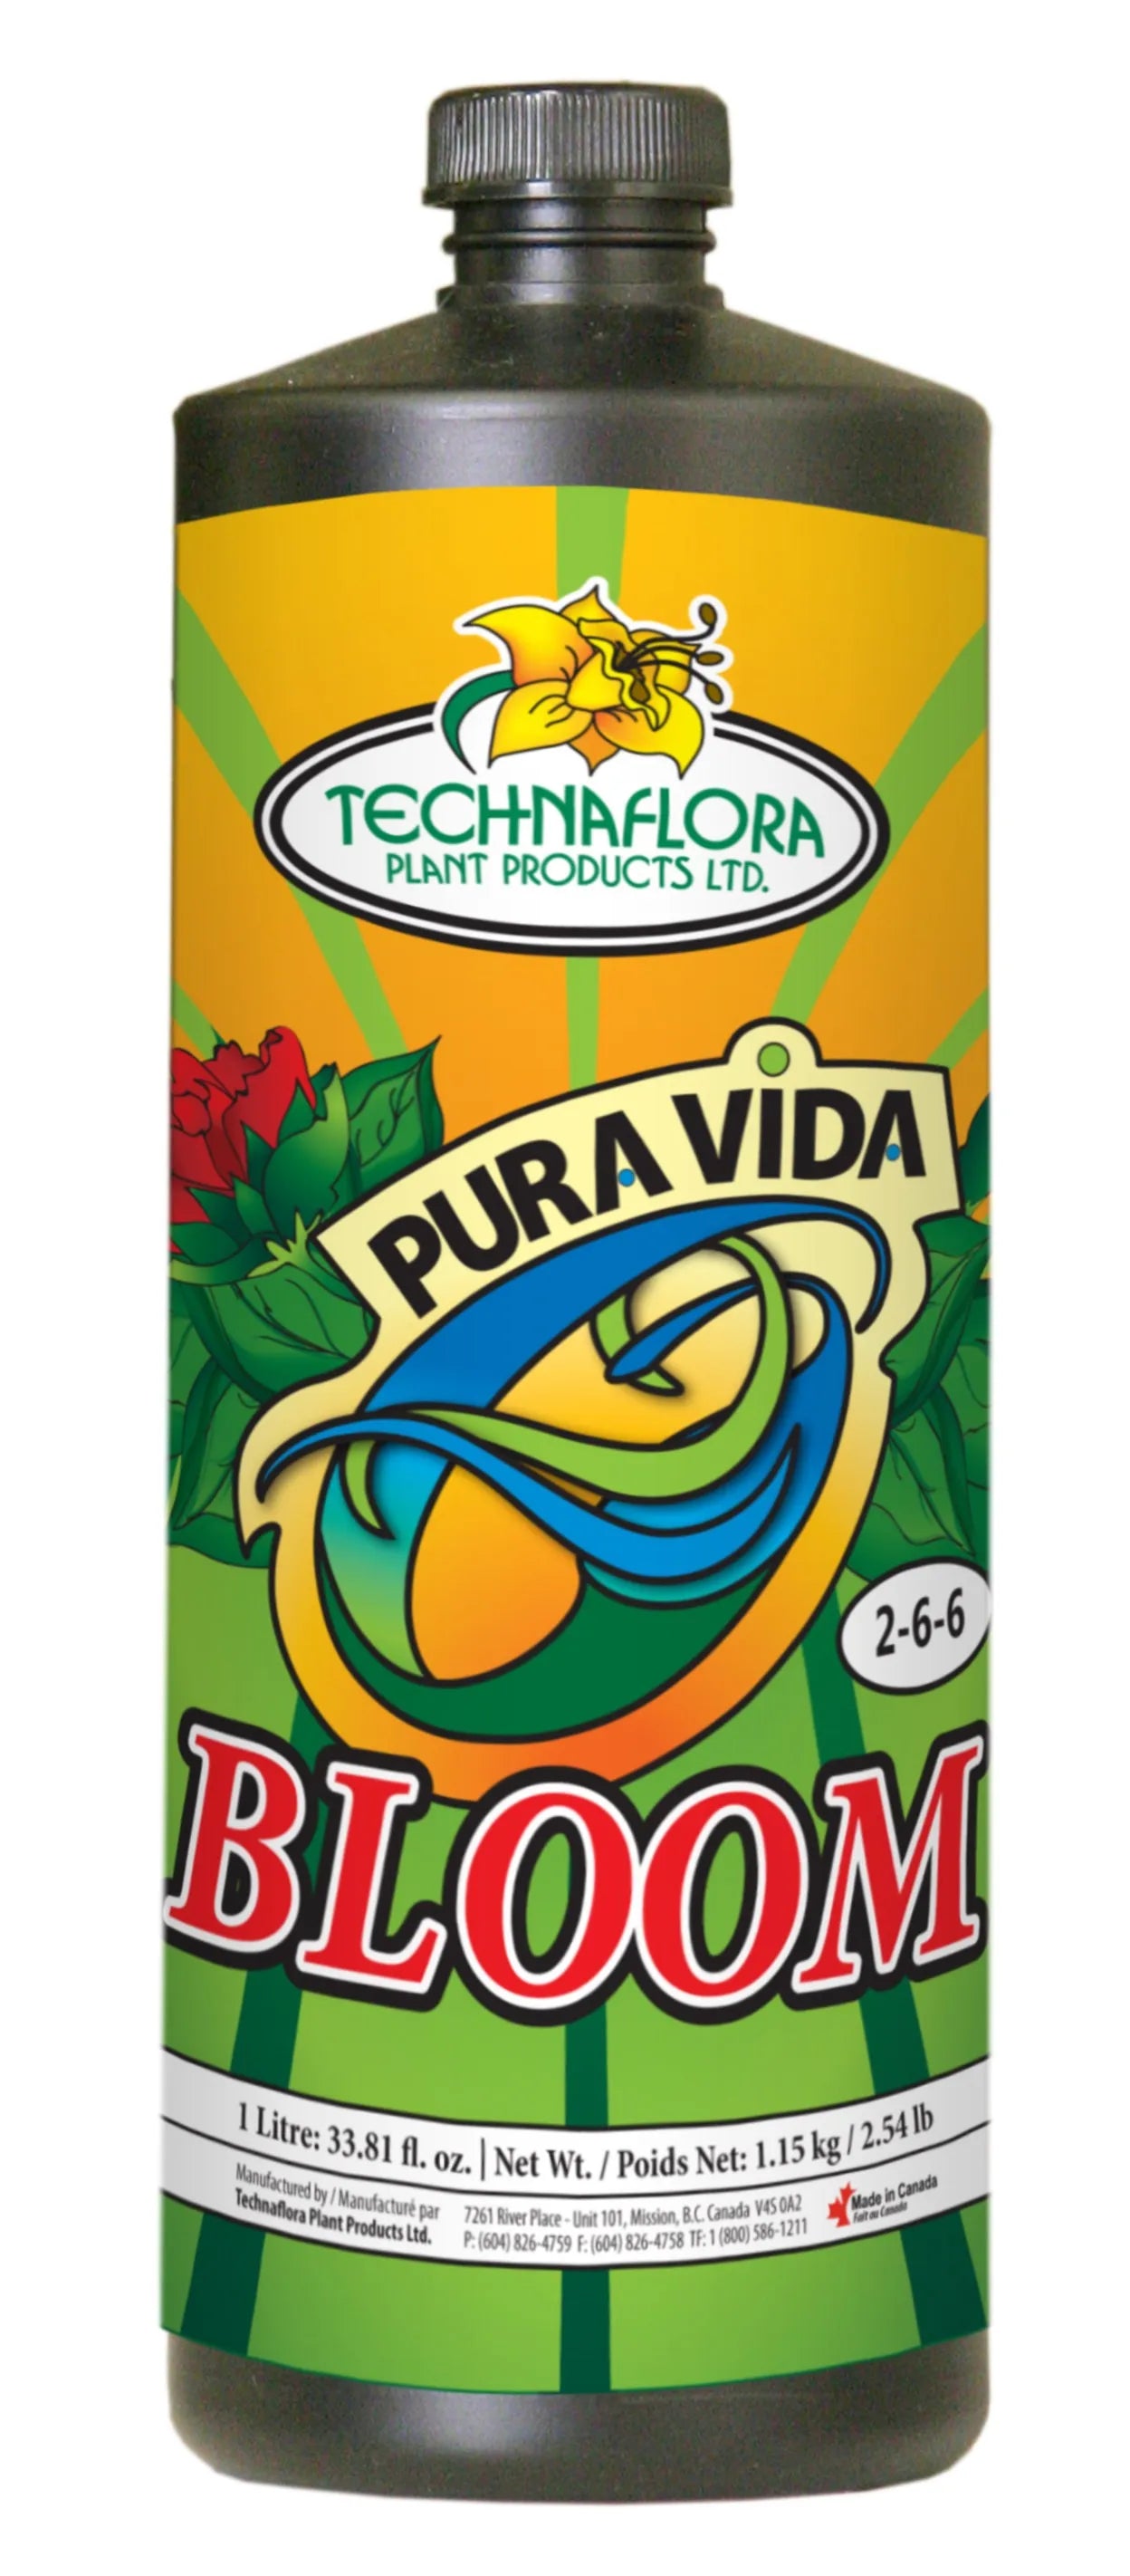 Technaflora Pura Vida Bloom 2 - 6 - 6